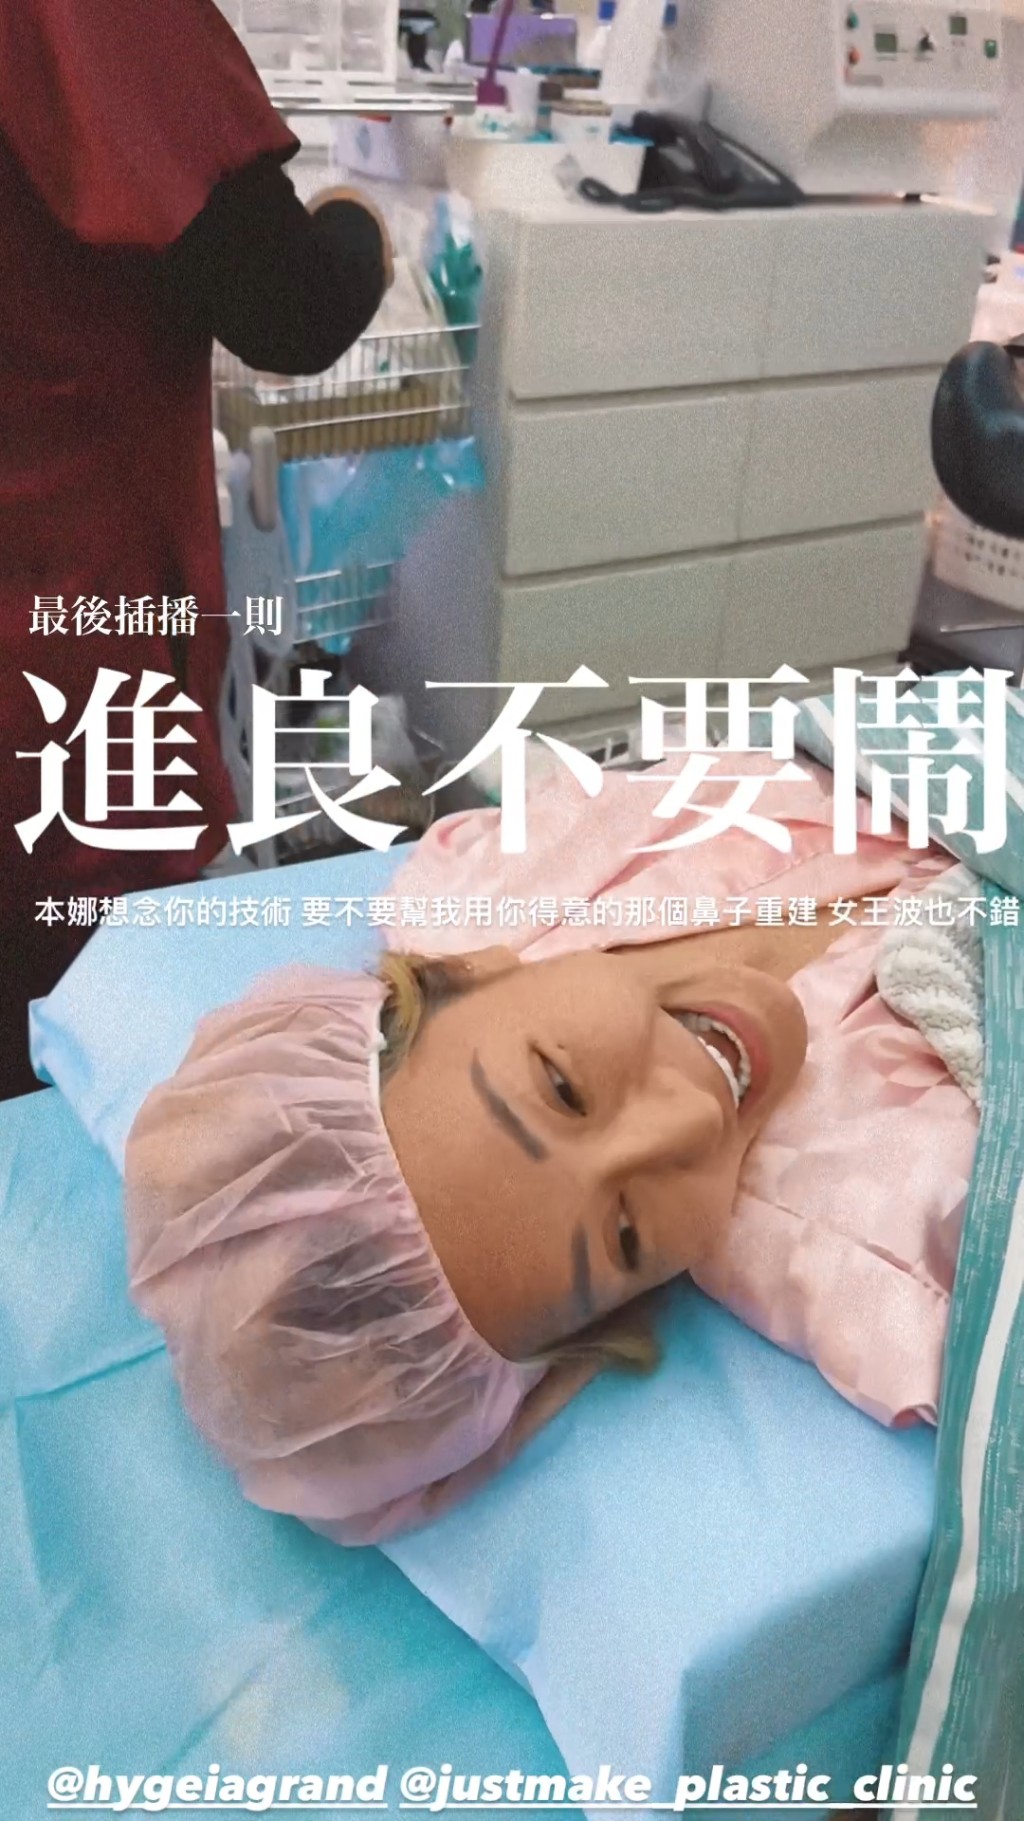 梁云菲早前在IG晒出在诊所做手术的照片，更自爆做「一线鲍手术」。